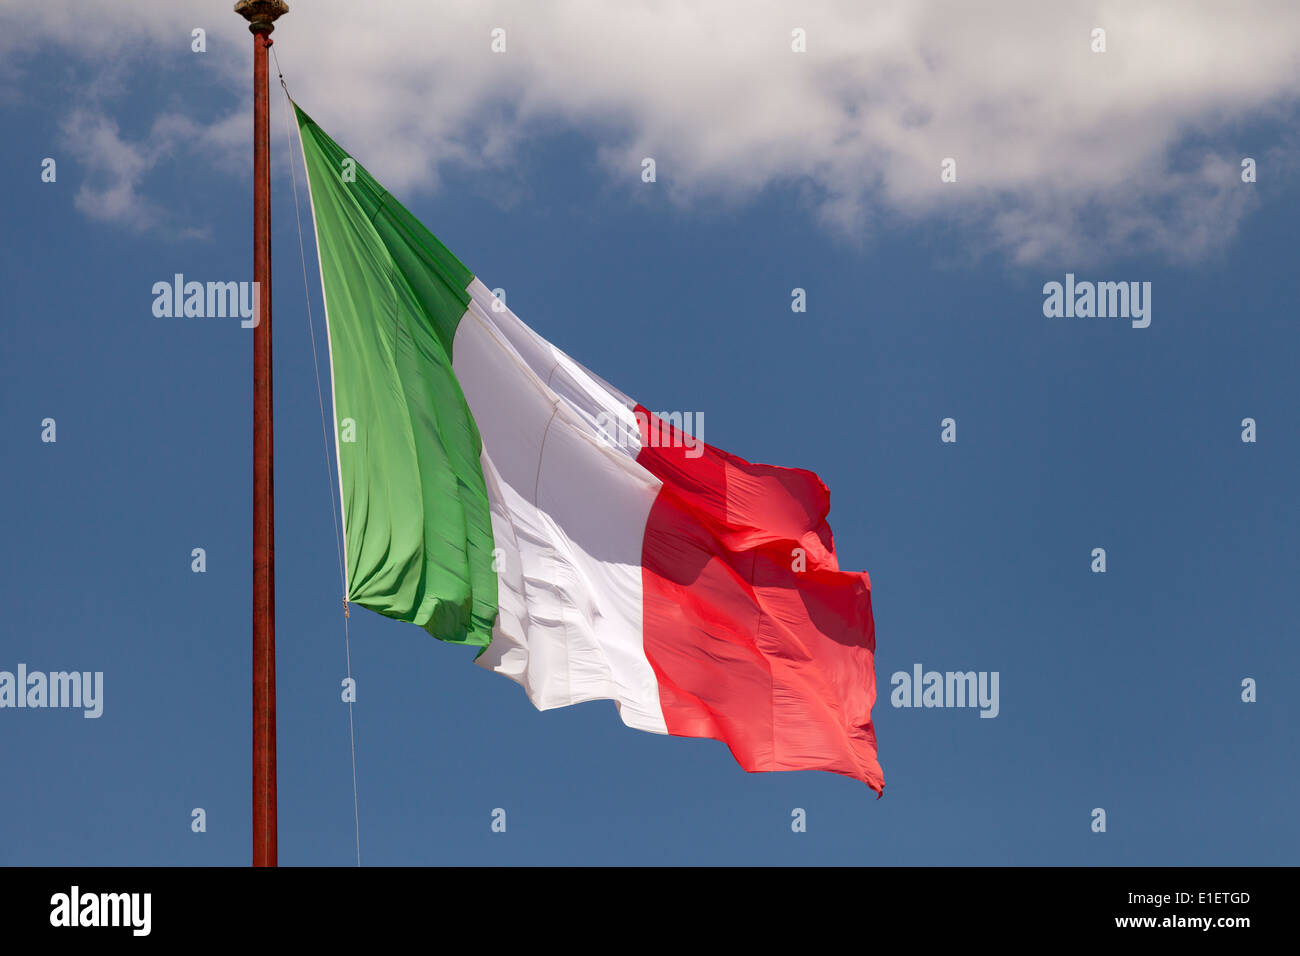 Italie drapeau - le drapeau italien voler contre un ciel bleu, Italie Europe Banque D'Images